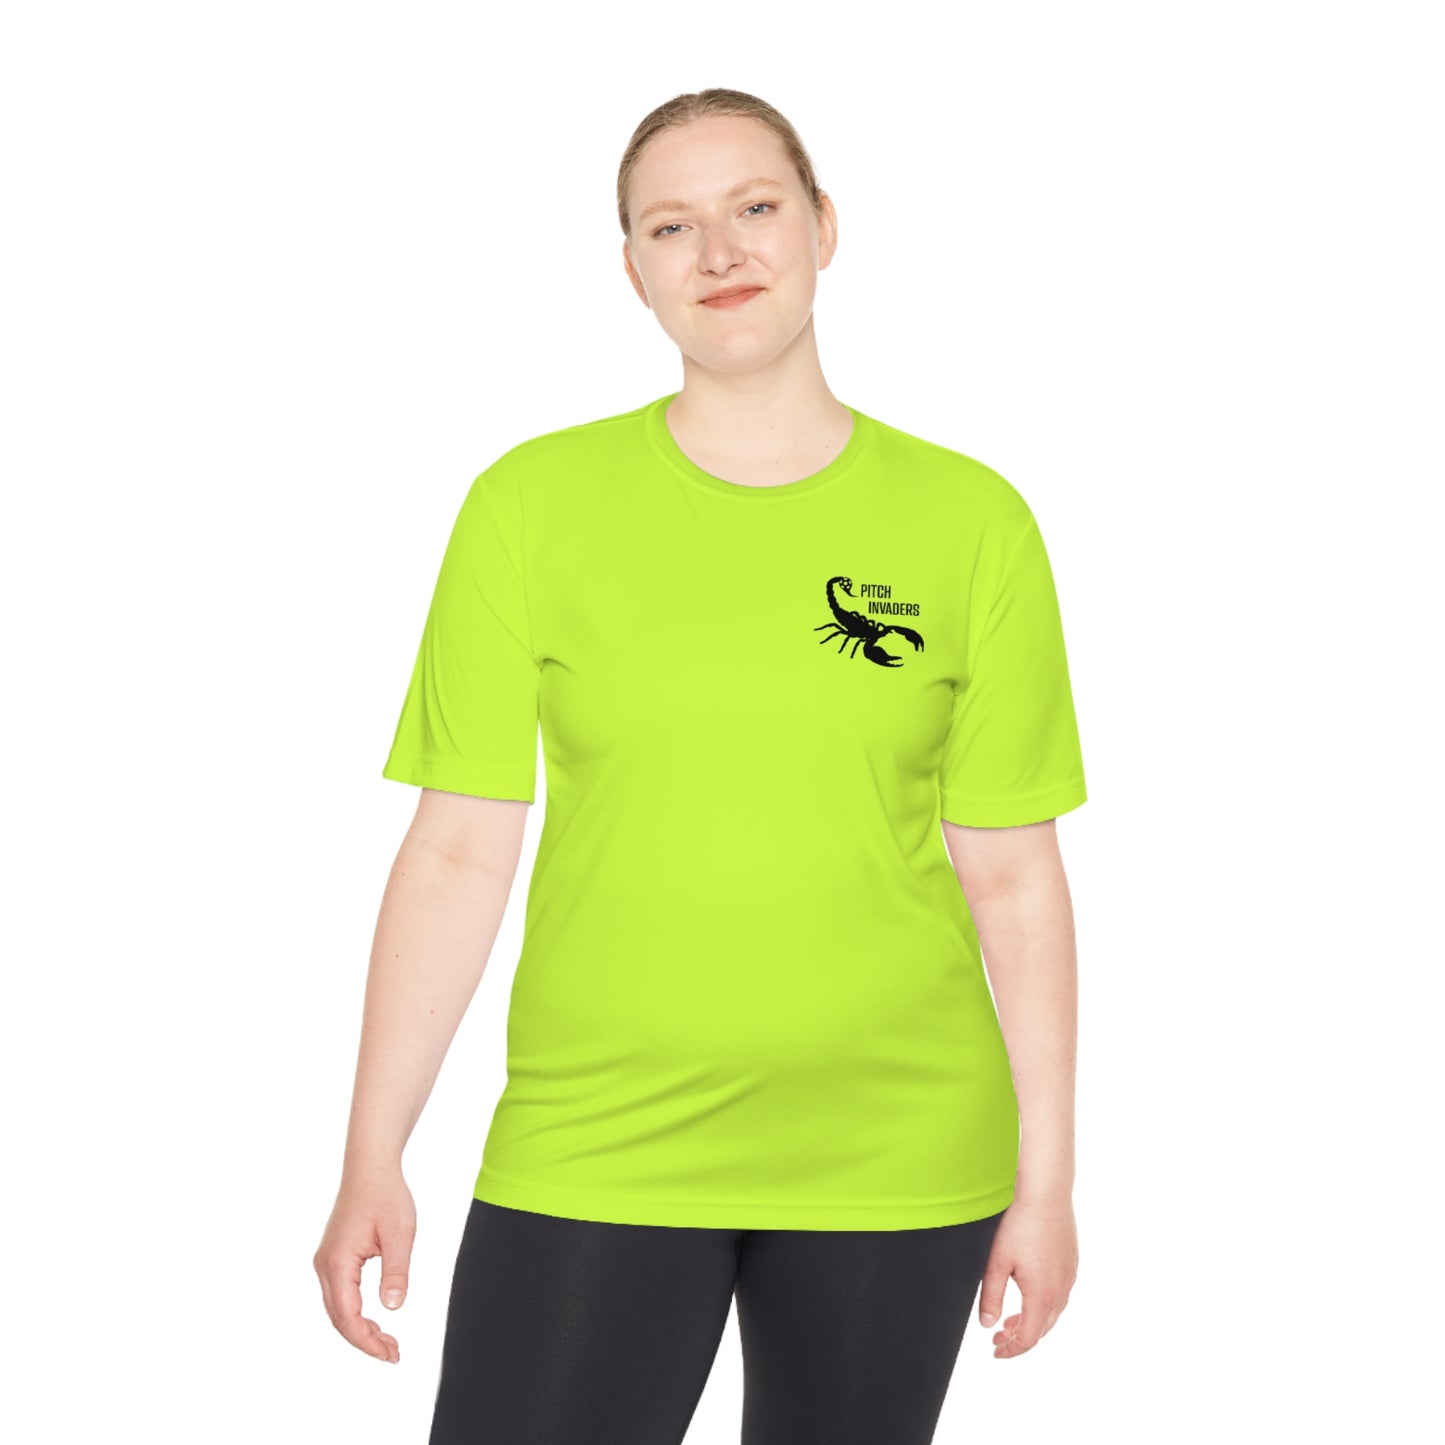 YOU GOT NUTMEGGED Athletic T-Shirt (Unisex)